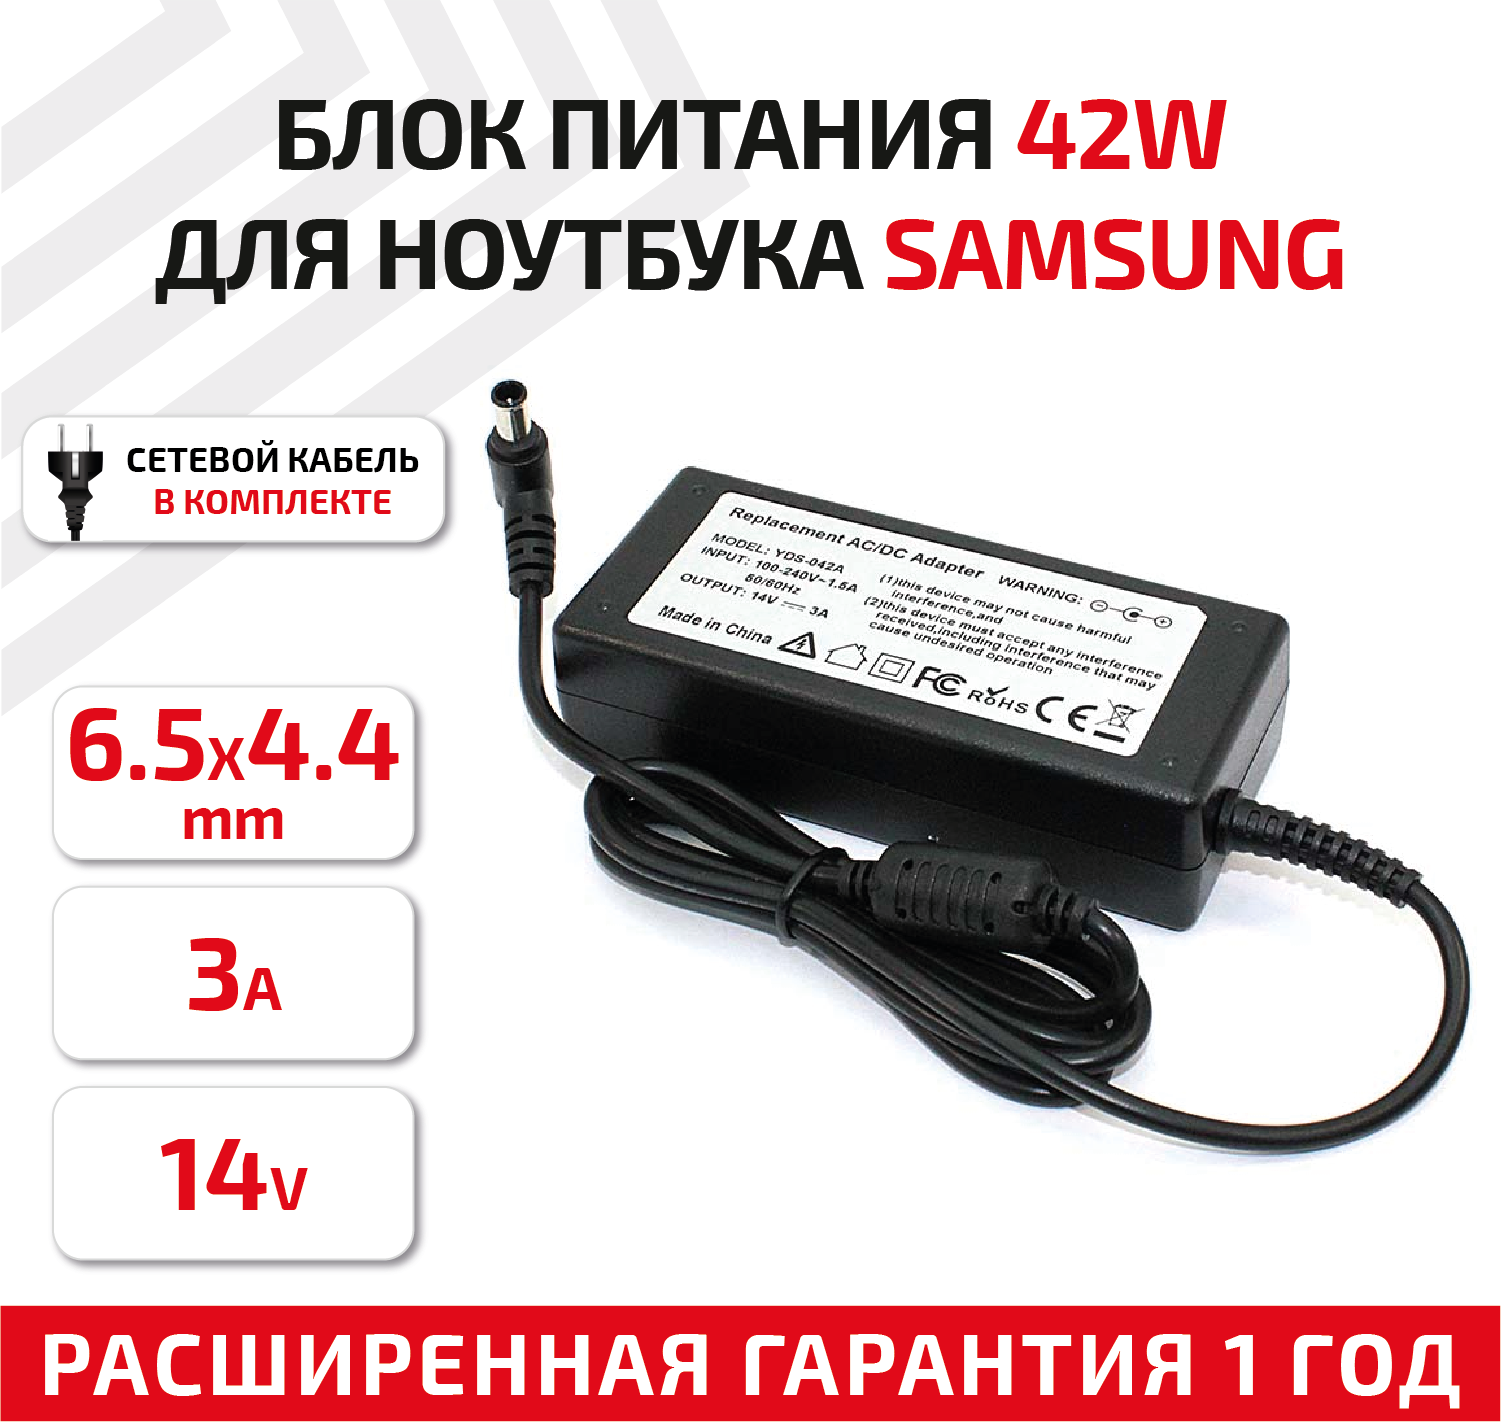 Зарядное устройство (блок питания/зарядка) для ноутбука Samsung 14В, 3А, 6.5x4.4мм